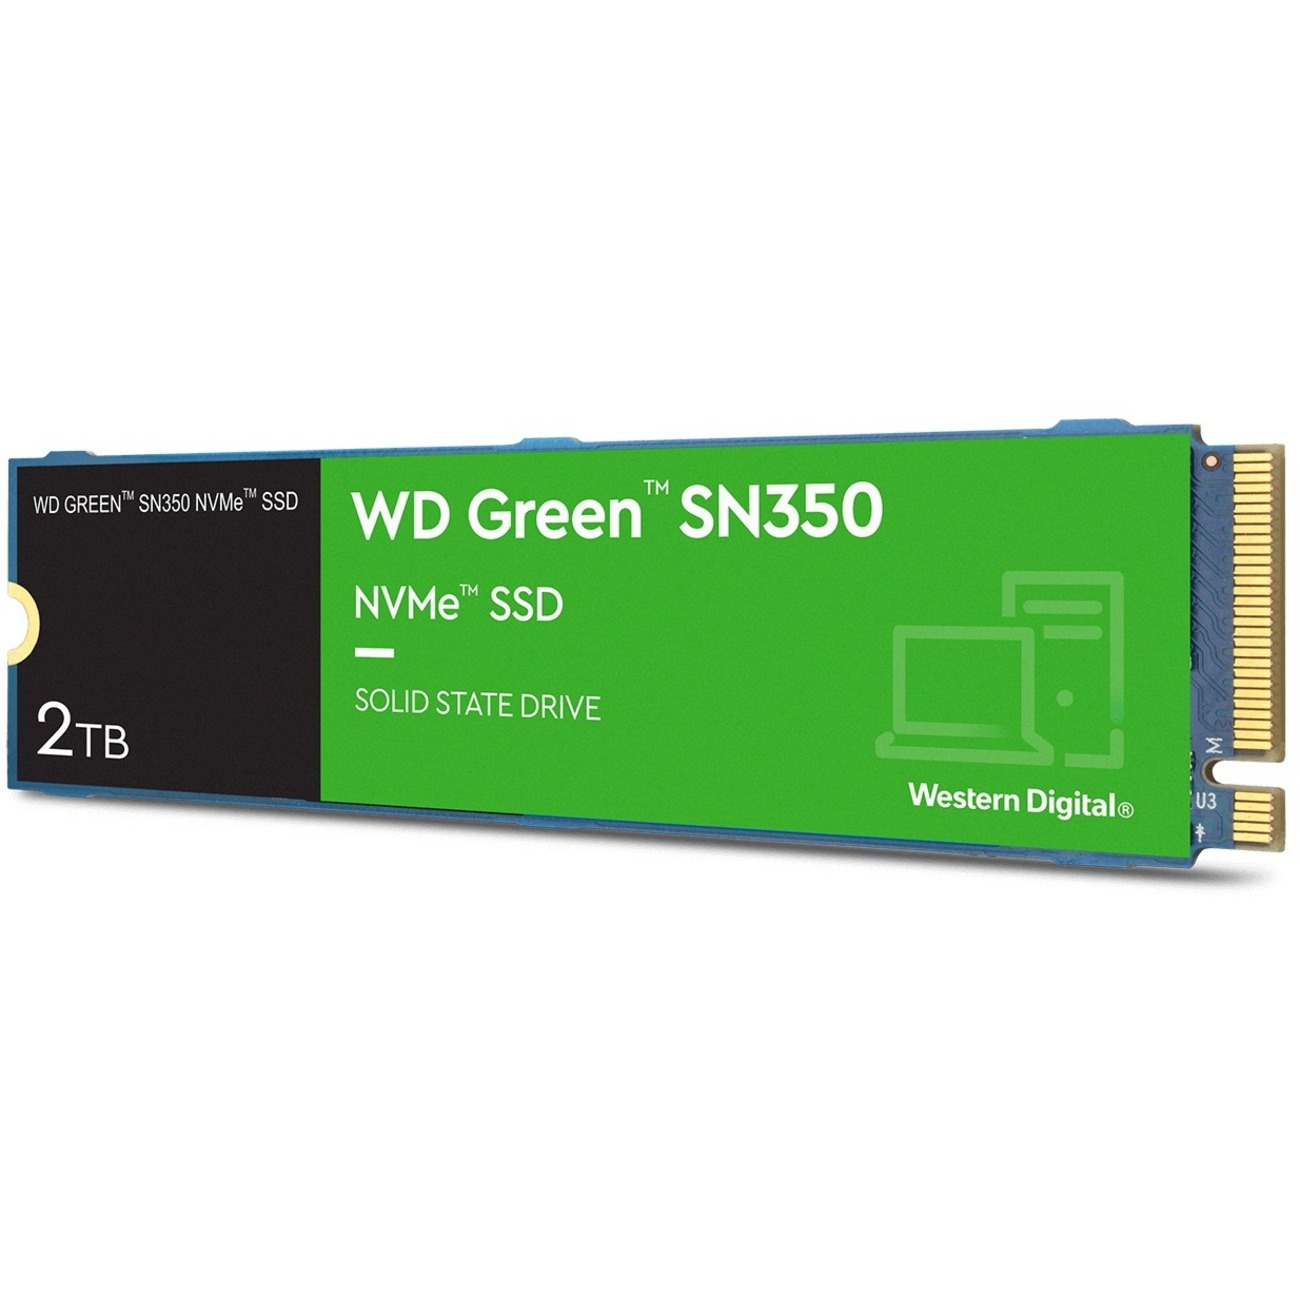 Western Digital WD Green SN350 NVMe M.2 2280 2TB PCI-Express 3.0 x4 Solid State Drive (SSD) WDS200T3G0C Internal SSDs - Newegg.com